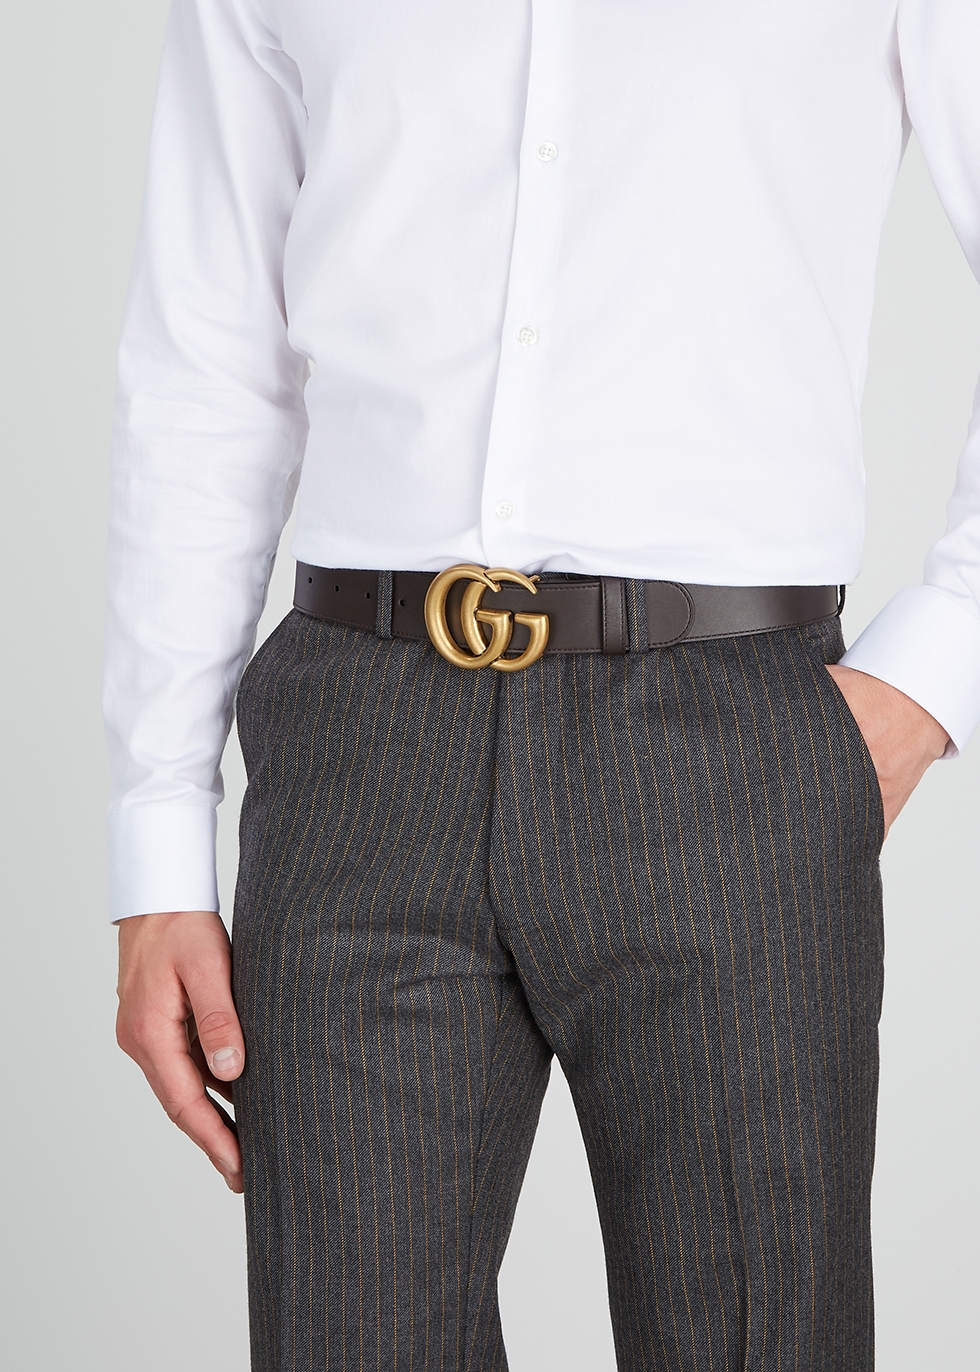 gucci belt on suit